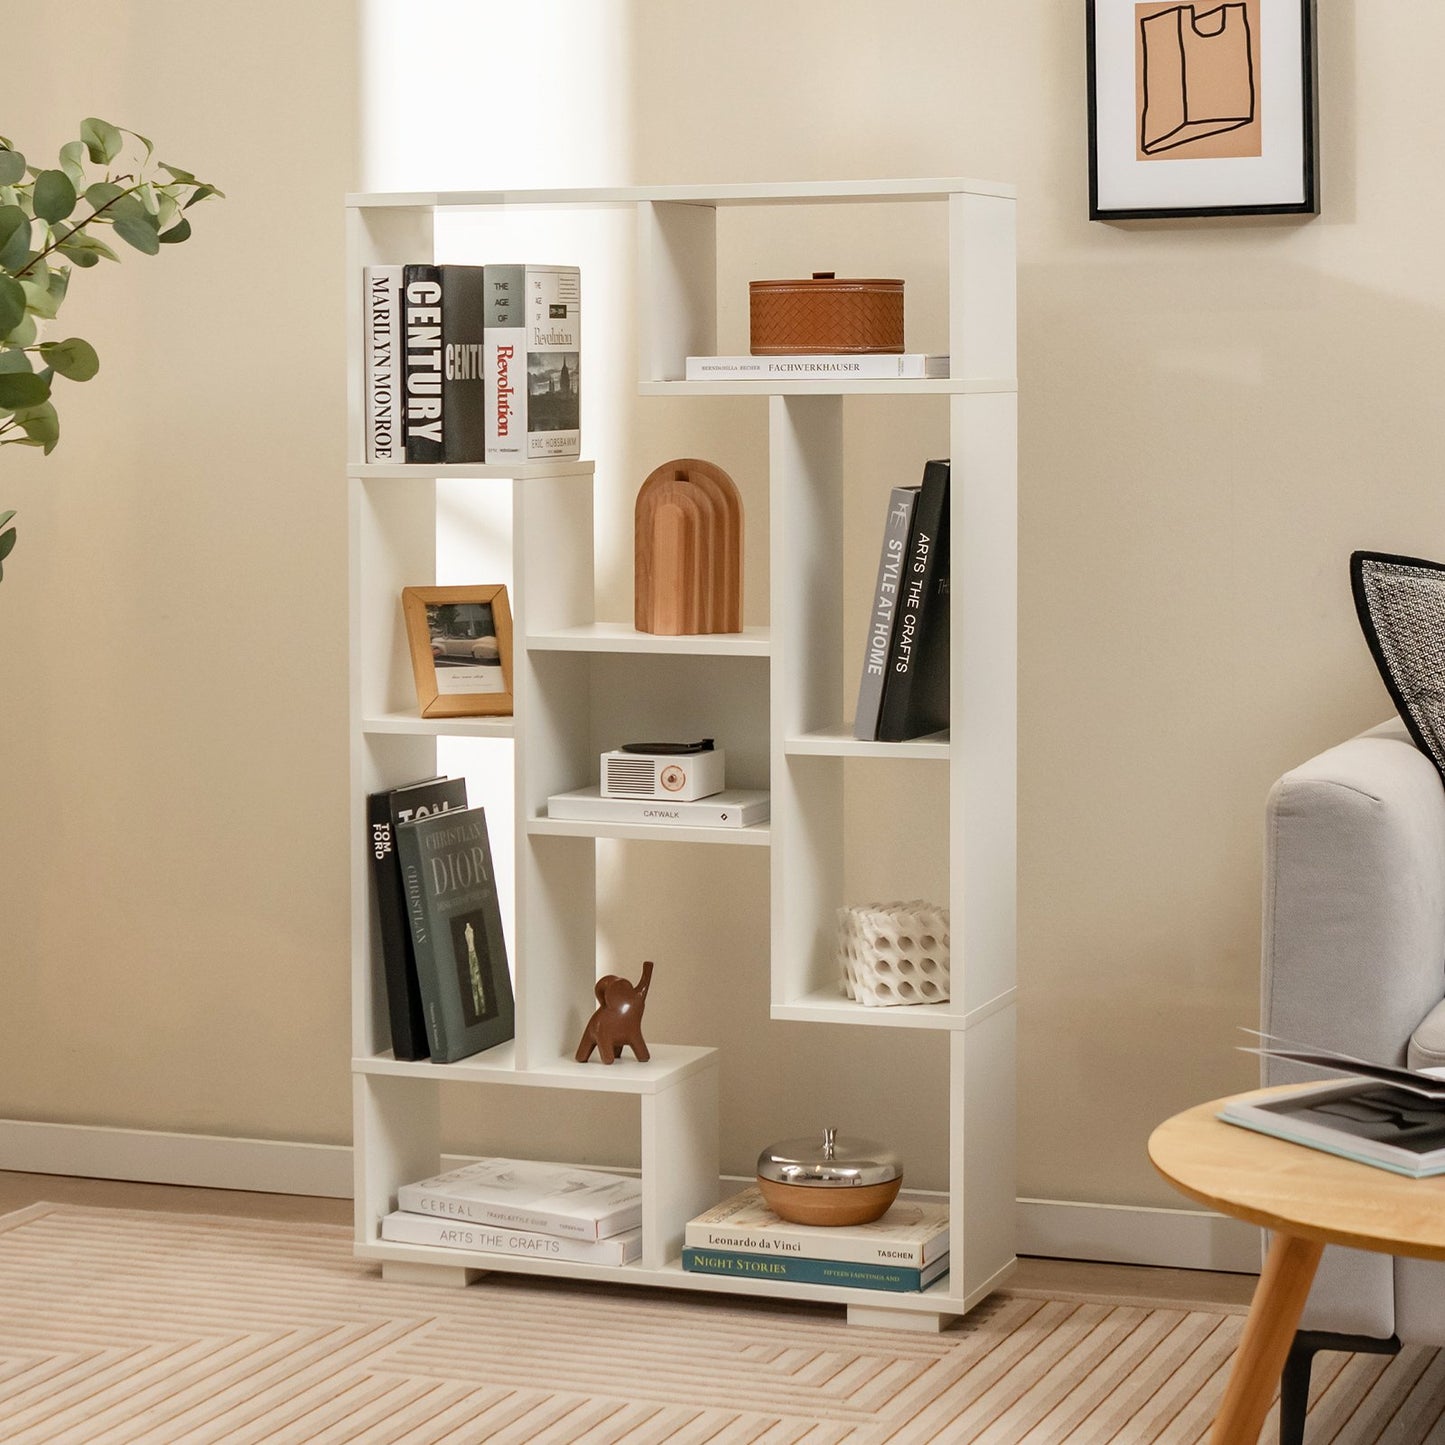 47-Inch Tall Bookshelf for Home Office Living Room, White